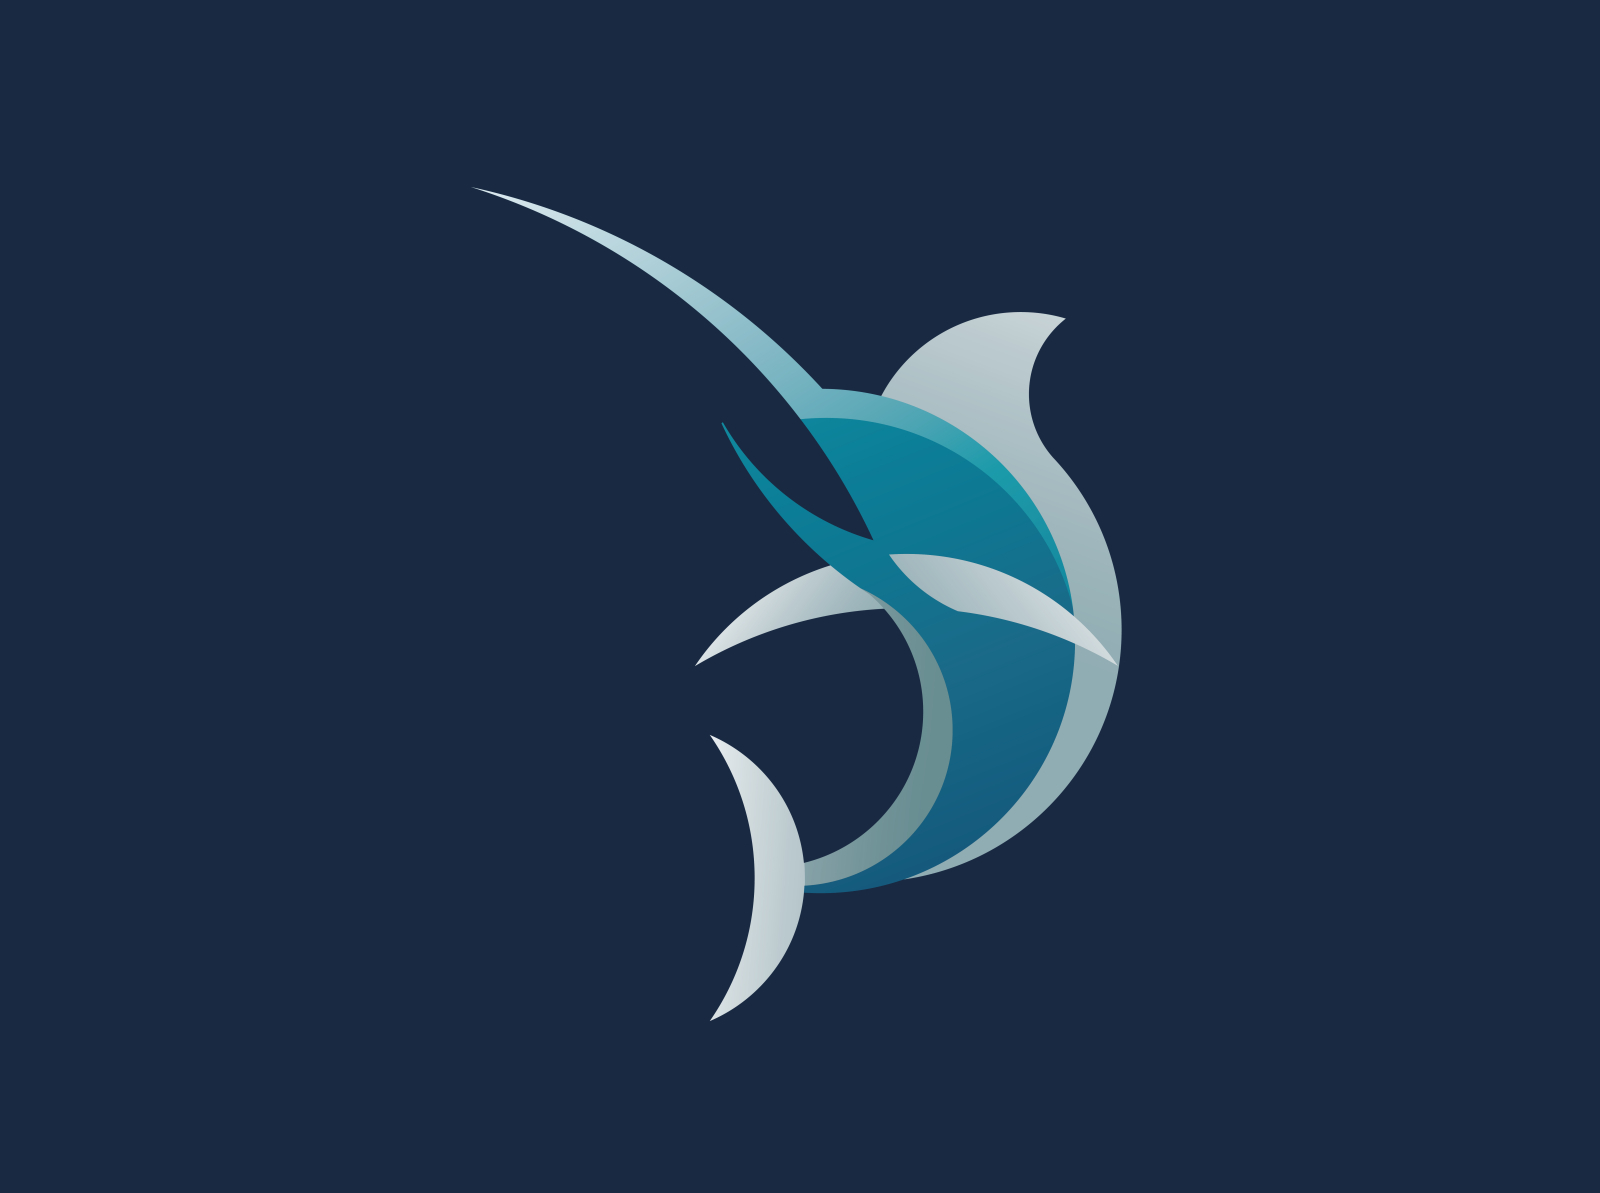 blue marlin logo